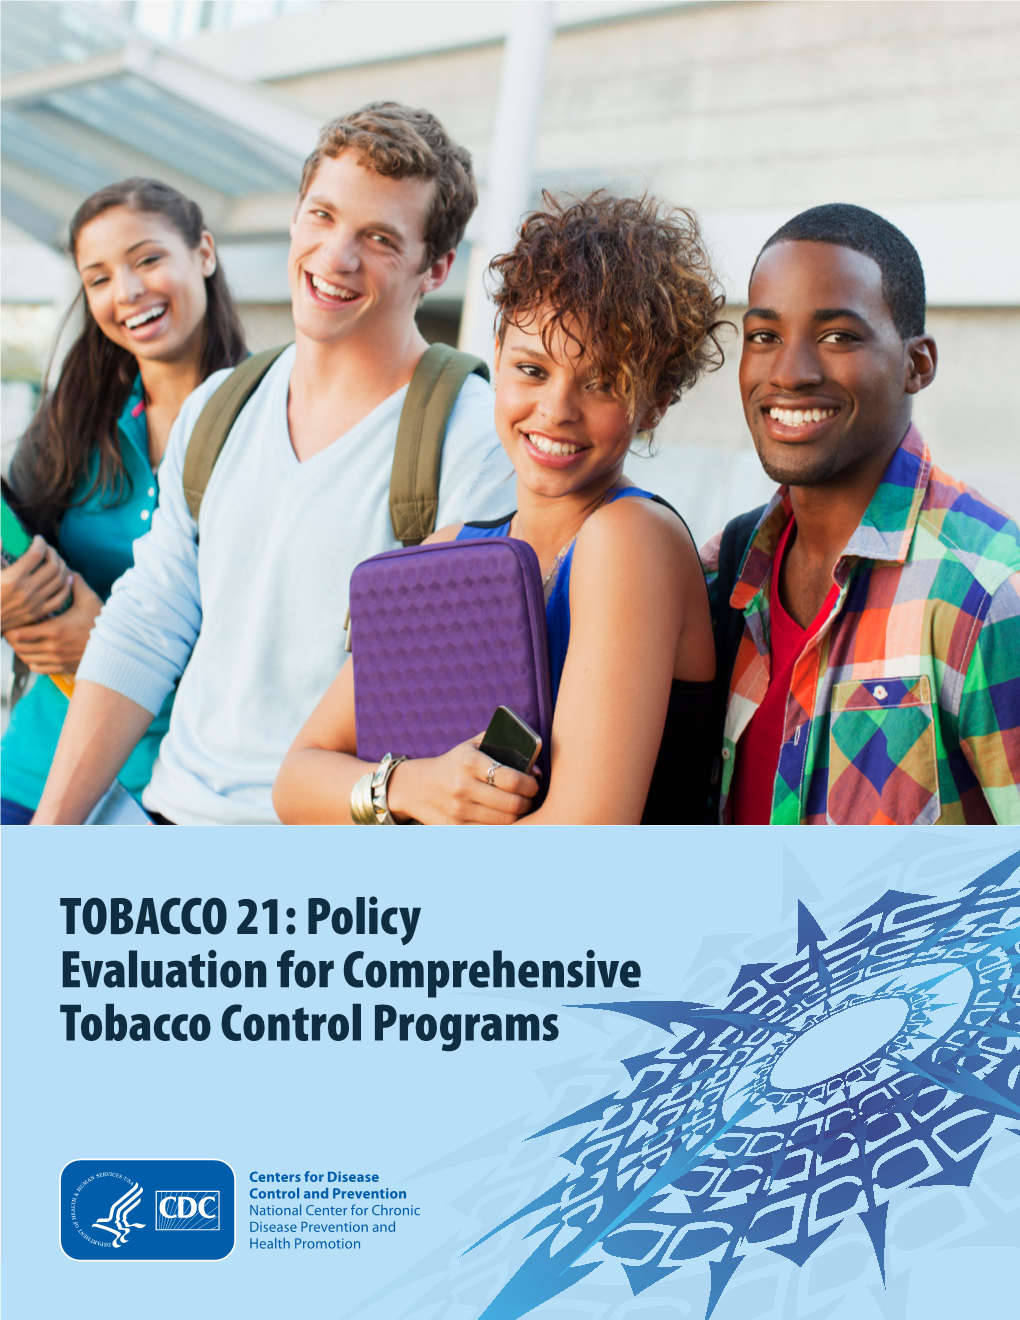 TOBACCO 21: Policy Evaluation for Comprehensive Tobacco Control Programs